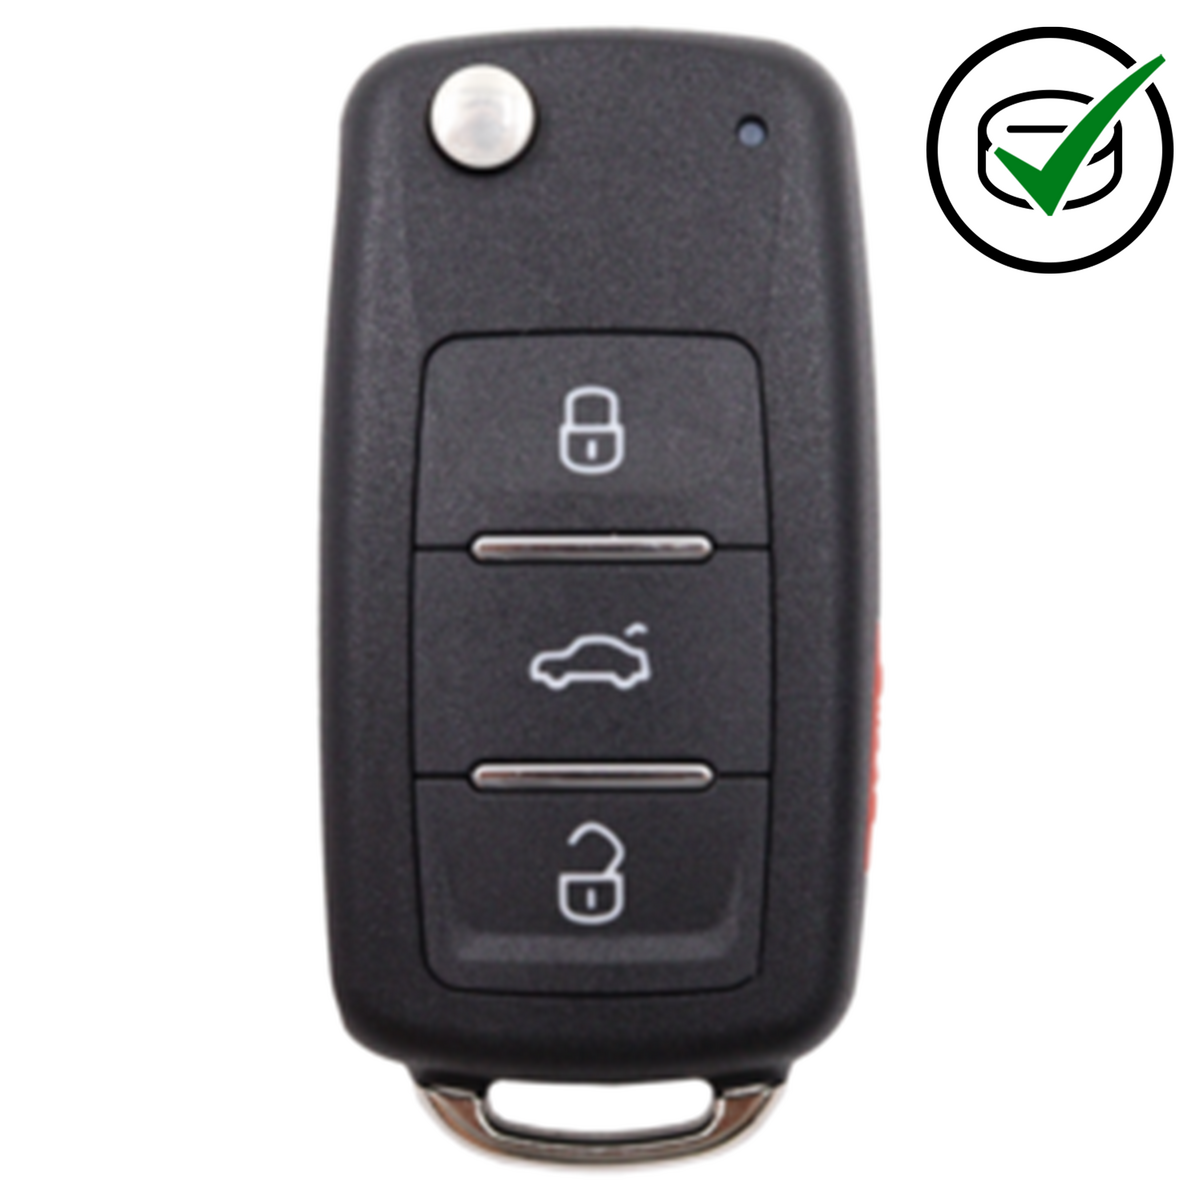 KeyDIY 4 Button Flip Key with Panic to suit NB08-4